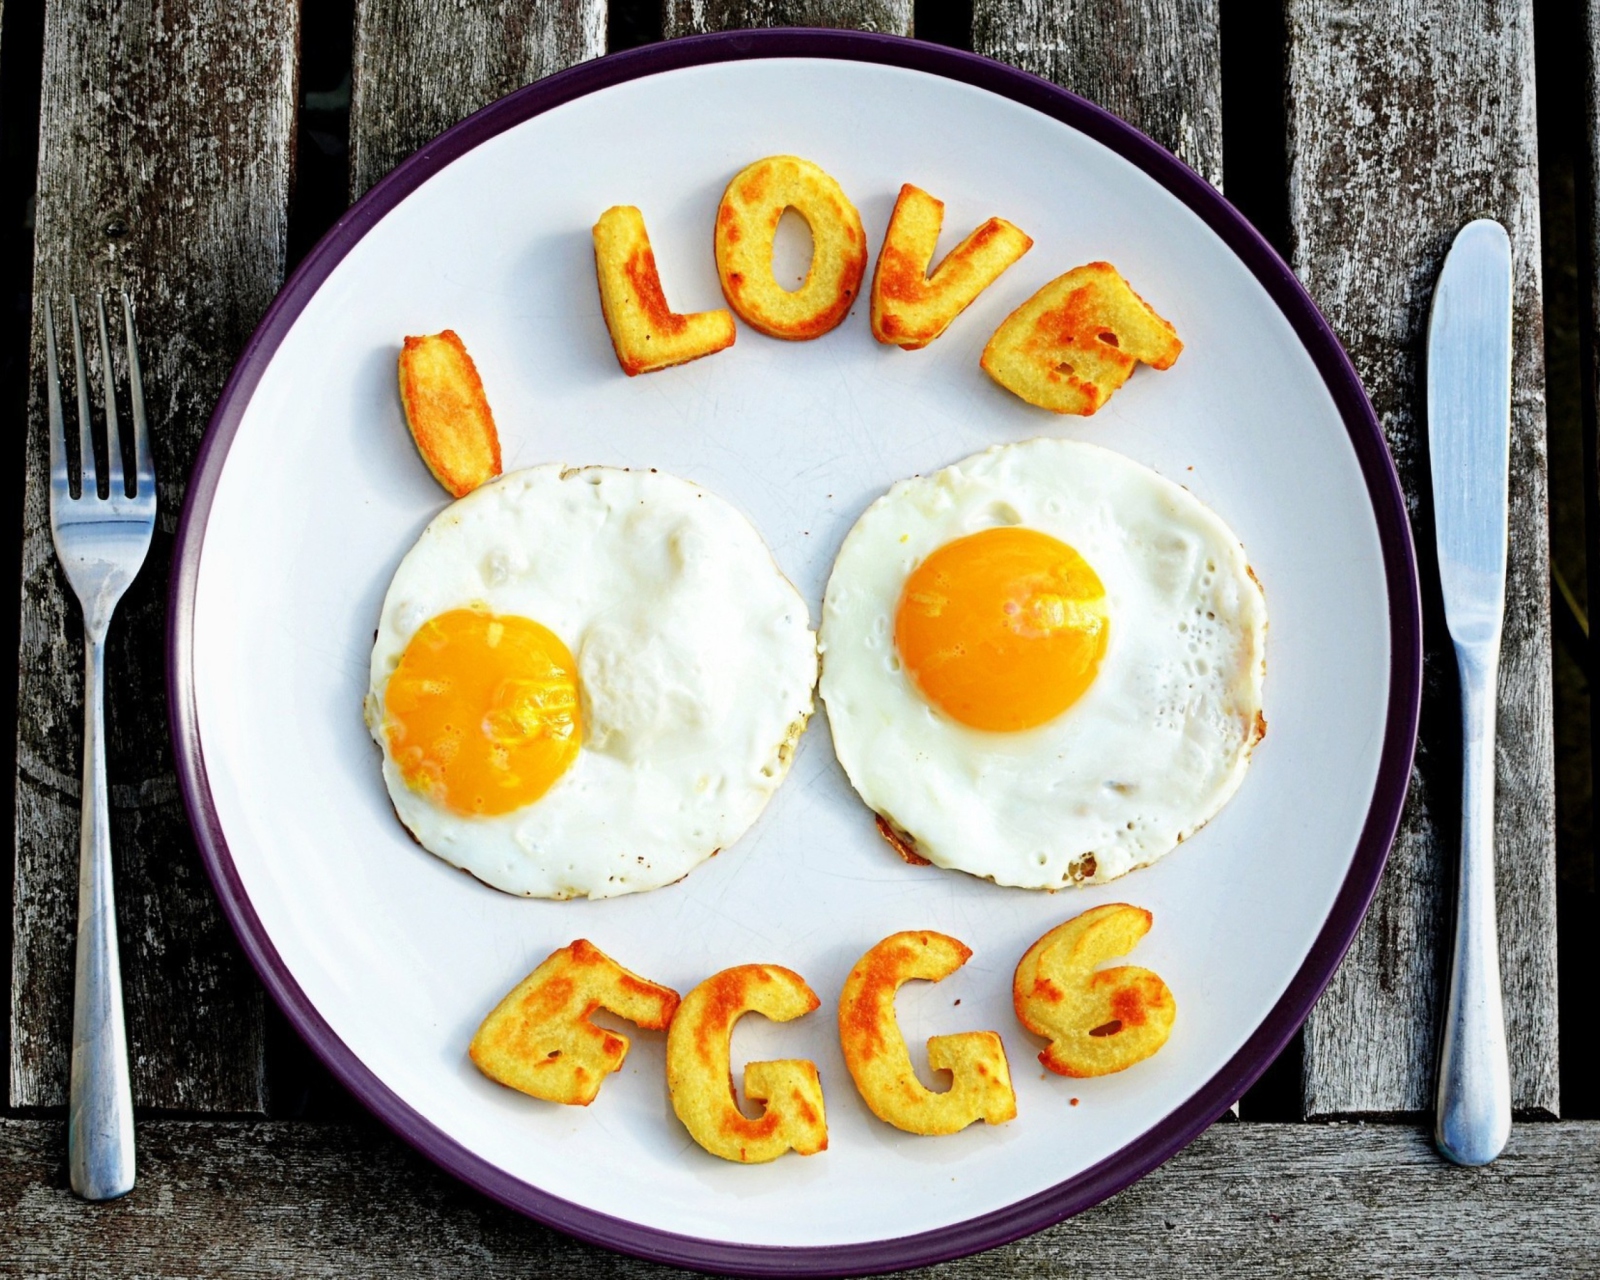 Обои I Love Eggs 1600x1280